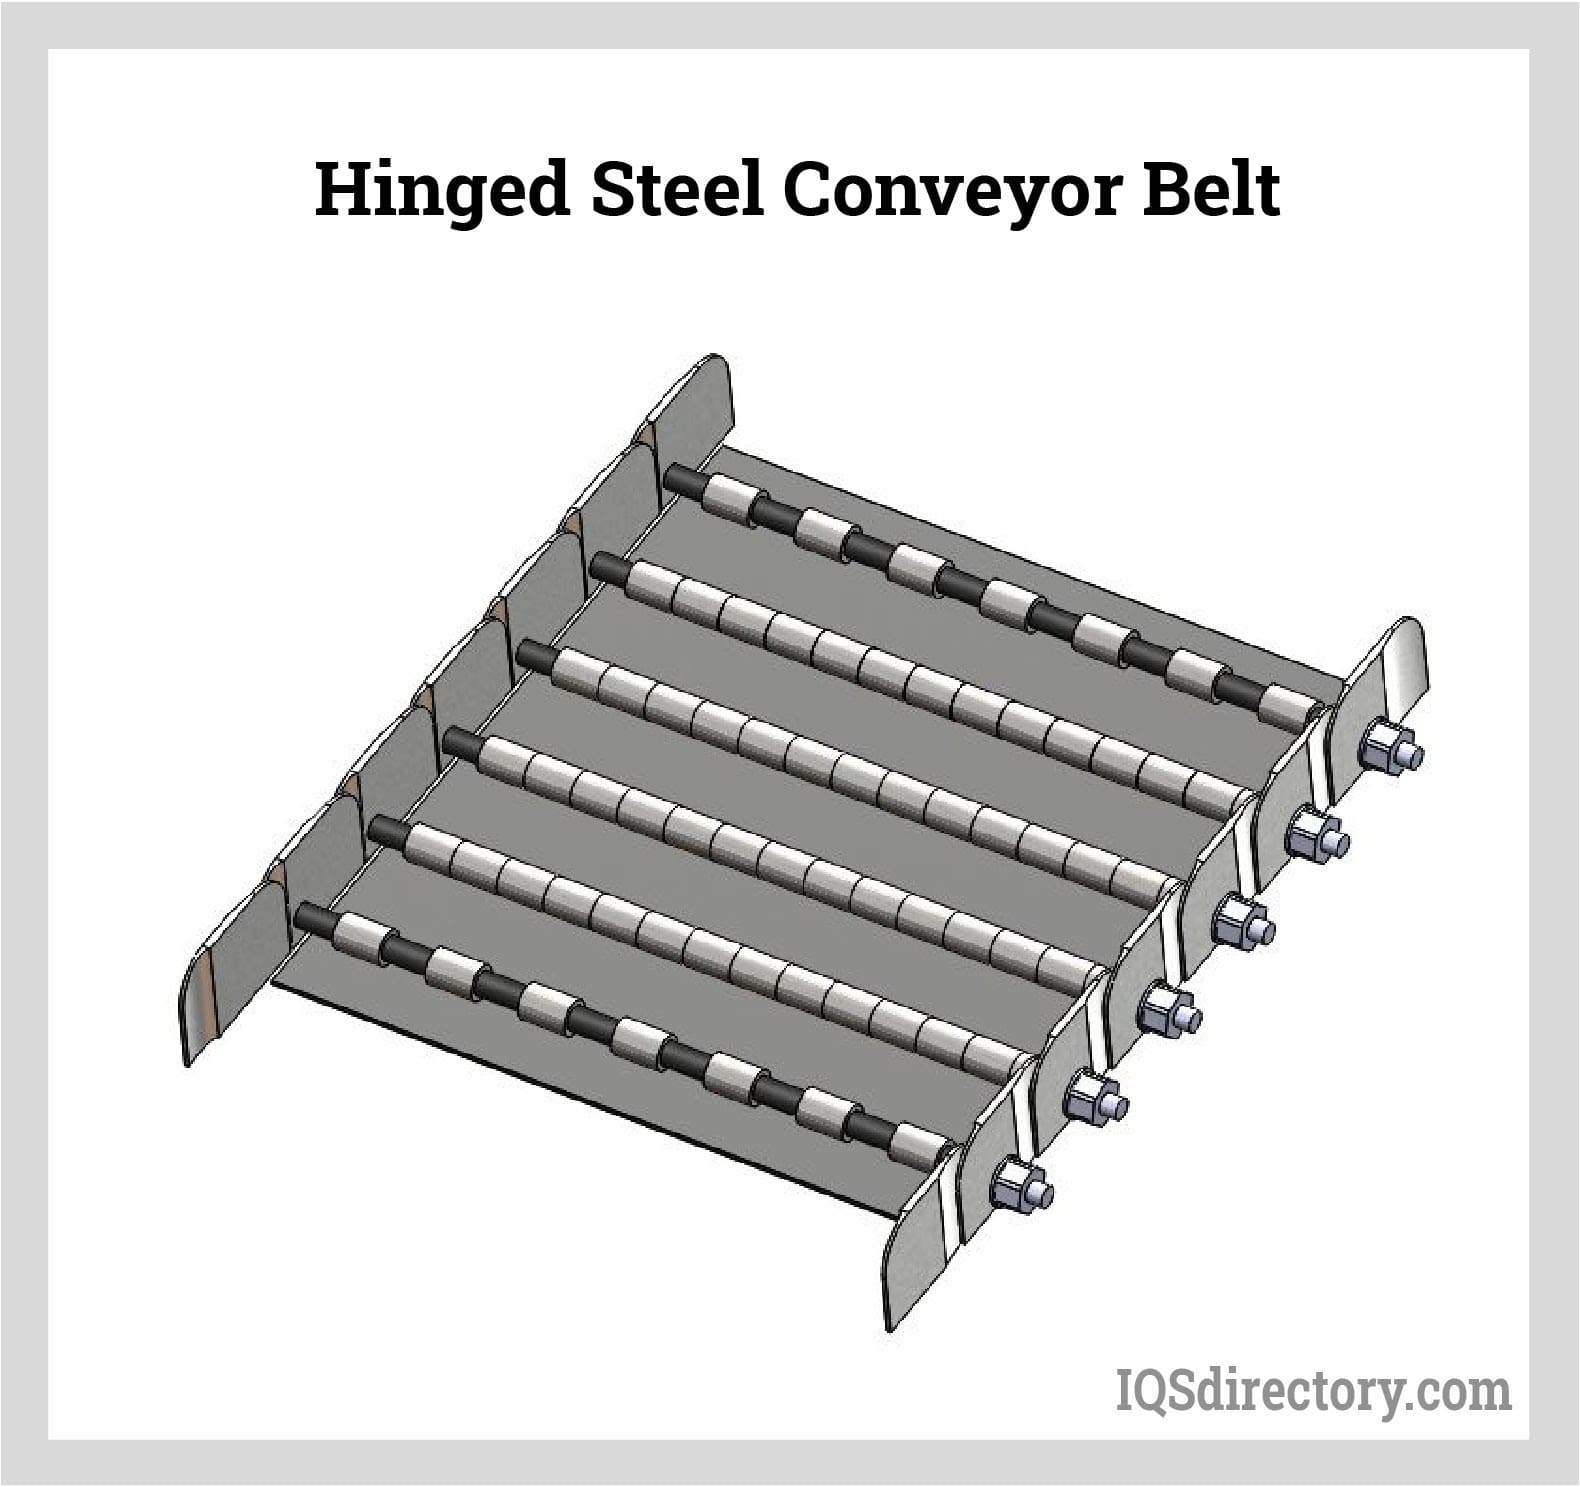 Hinged Steel Conveyor Belt